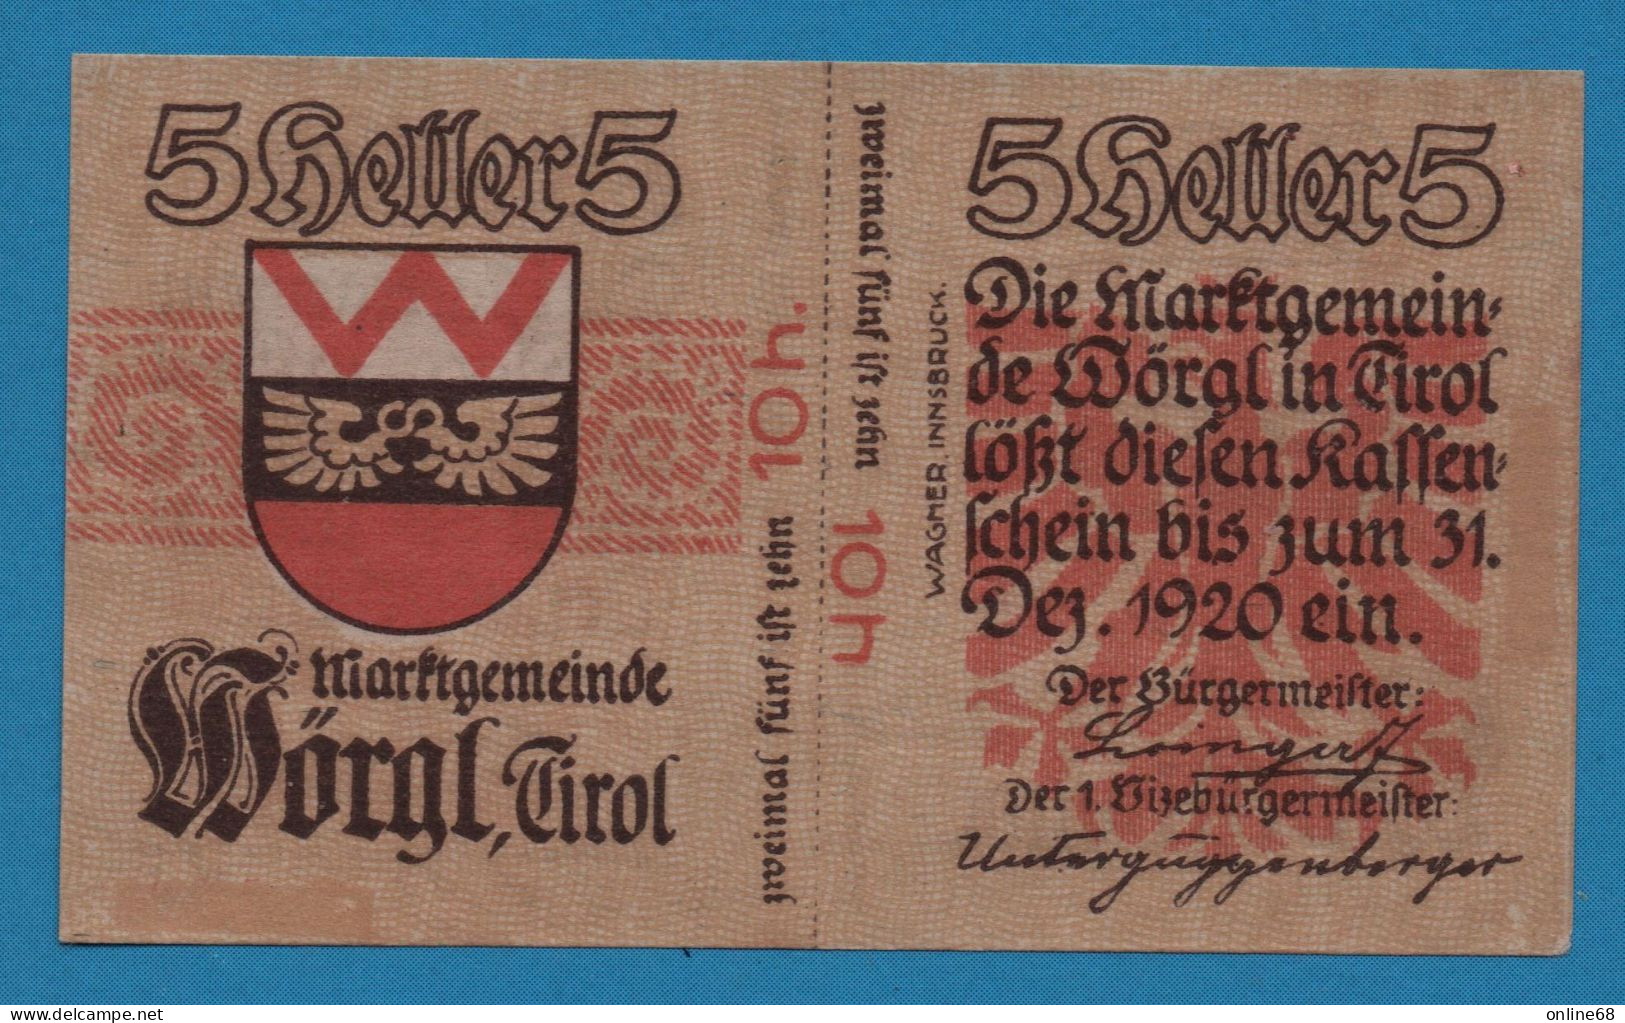 AUSTRIA Wörgl Tirol Marktgemeinde 10 HELLER No Date-31/12/1920  NOTGELD Catalog # FS 1252 - Oesterreich